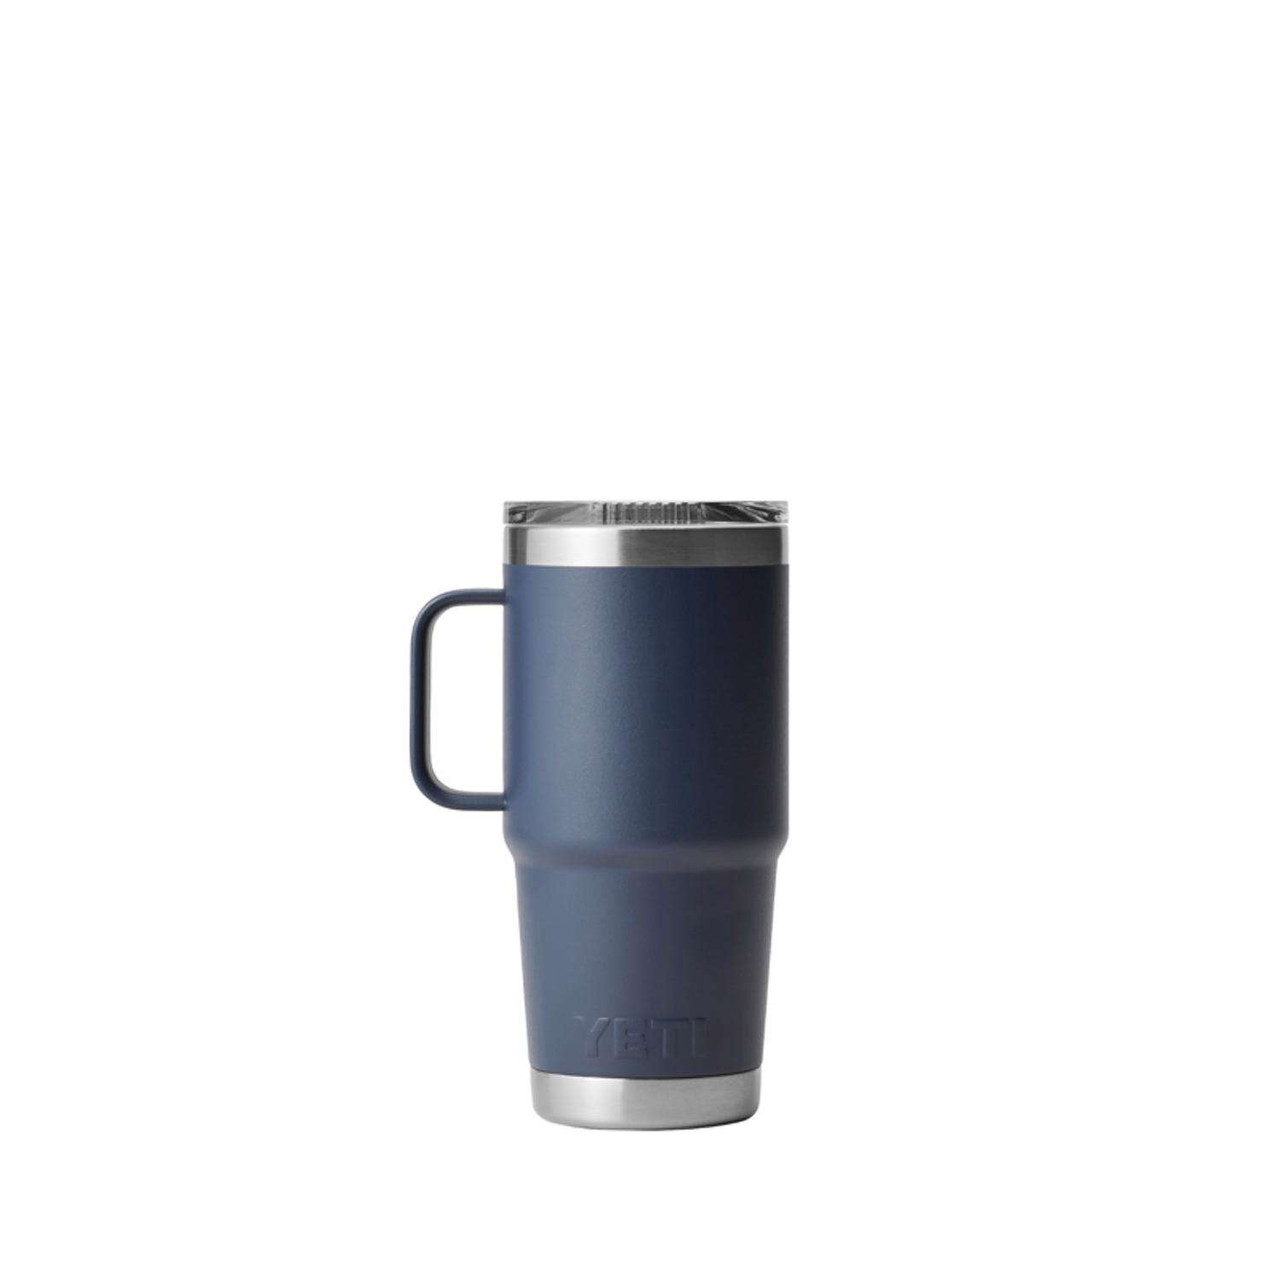 Yeti - Rambler 20 oz Travel Mug - Navy